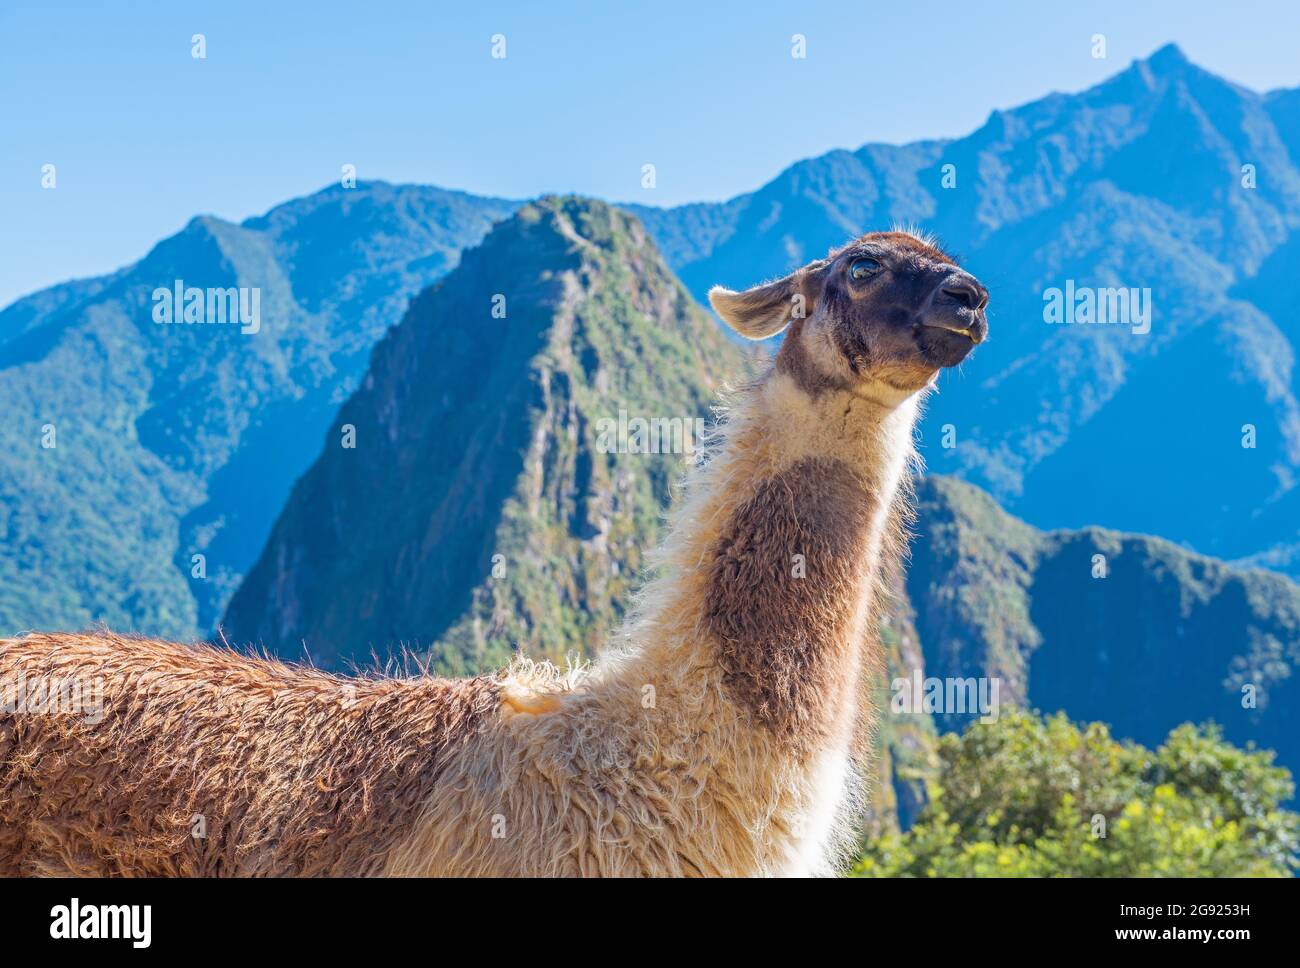 Llama (Lama glama) portrait in Machu Picchu, Peru. Stock Photo